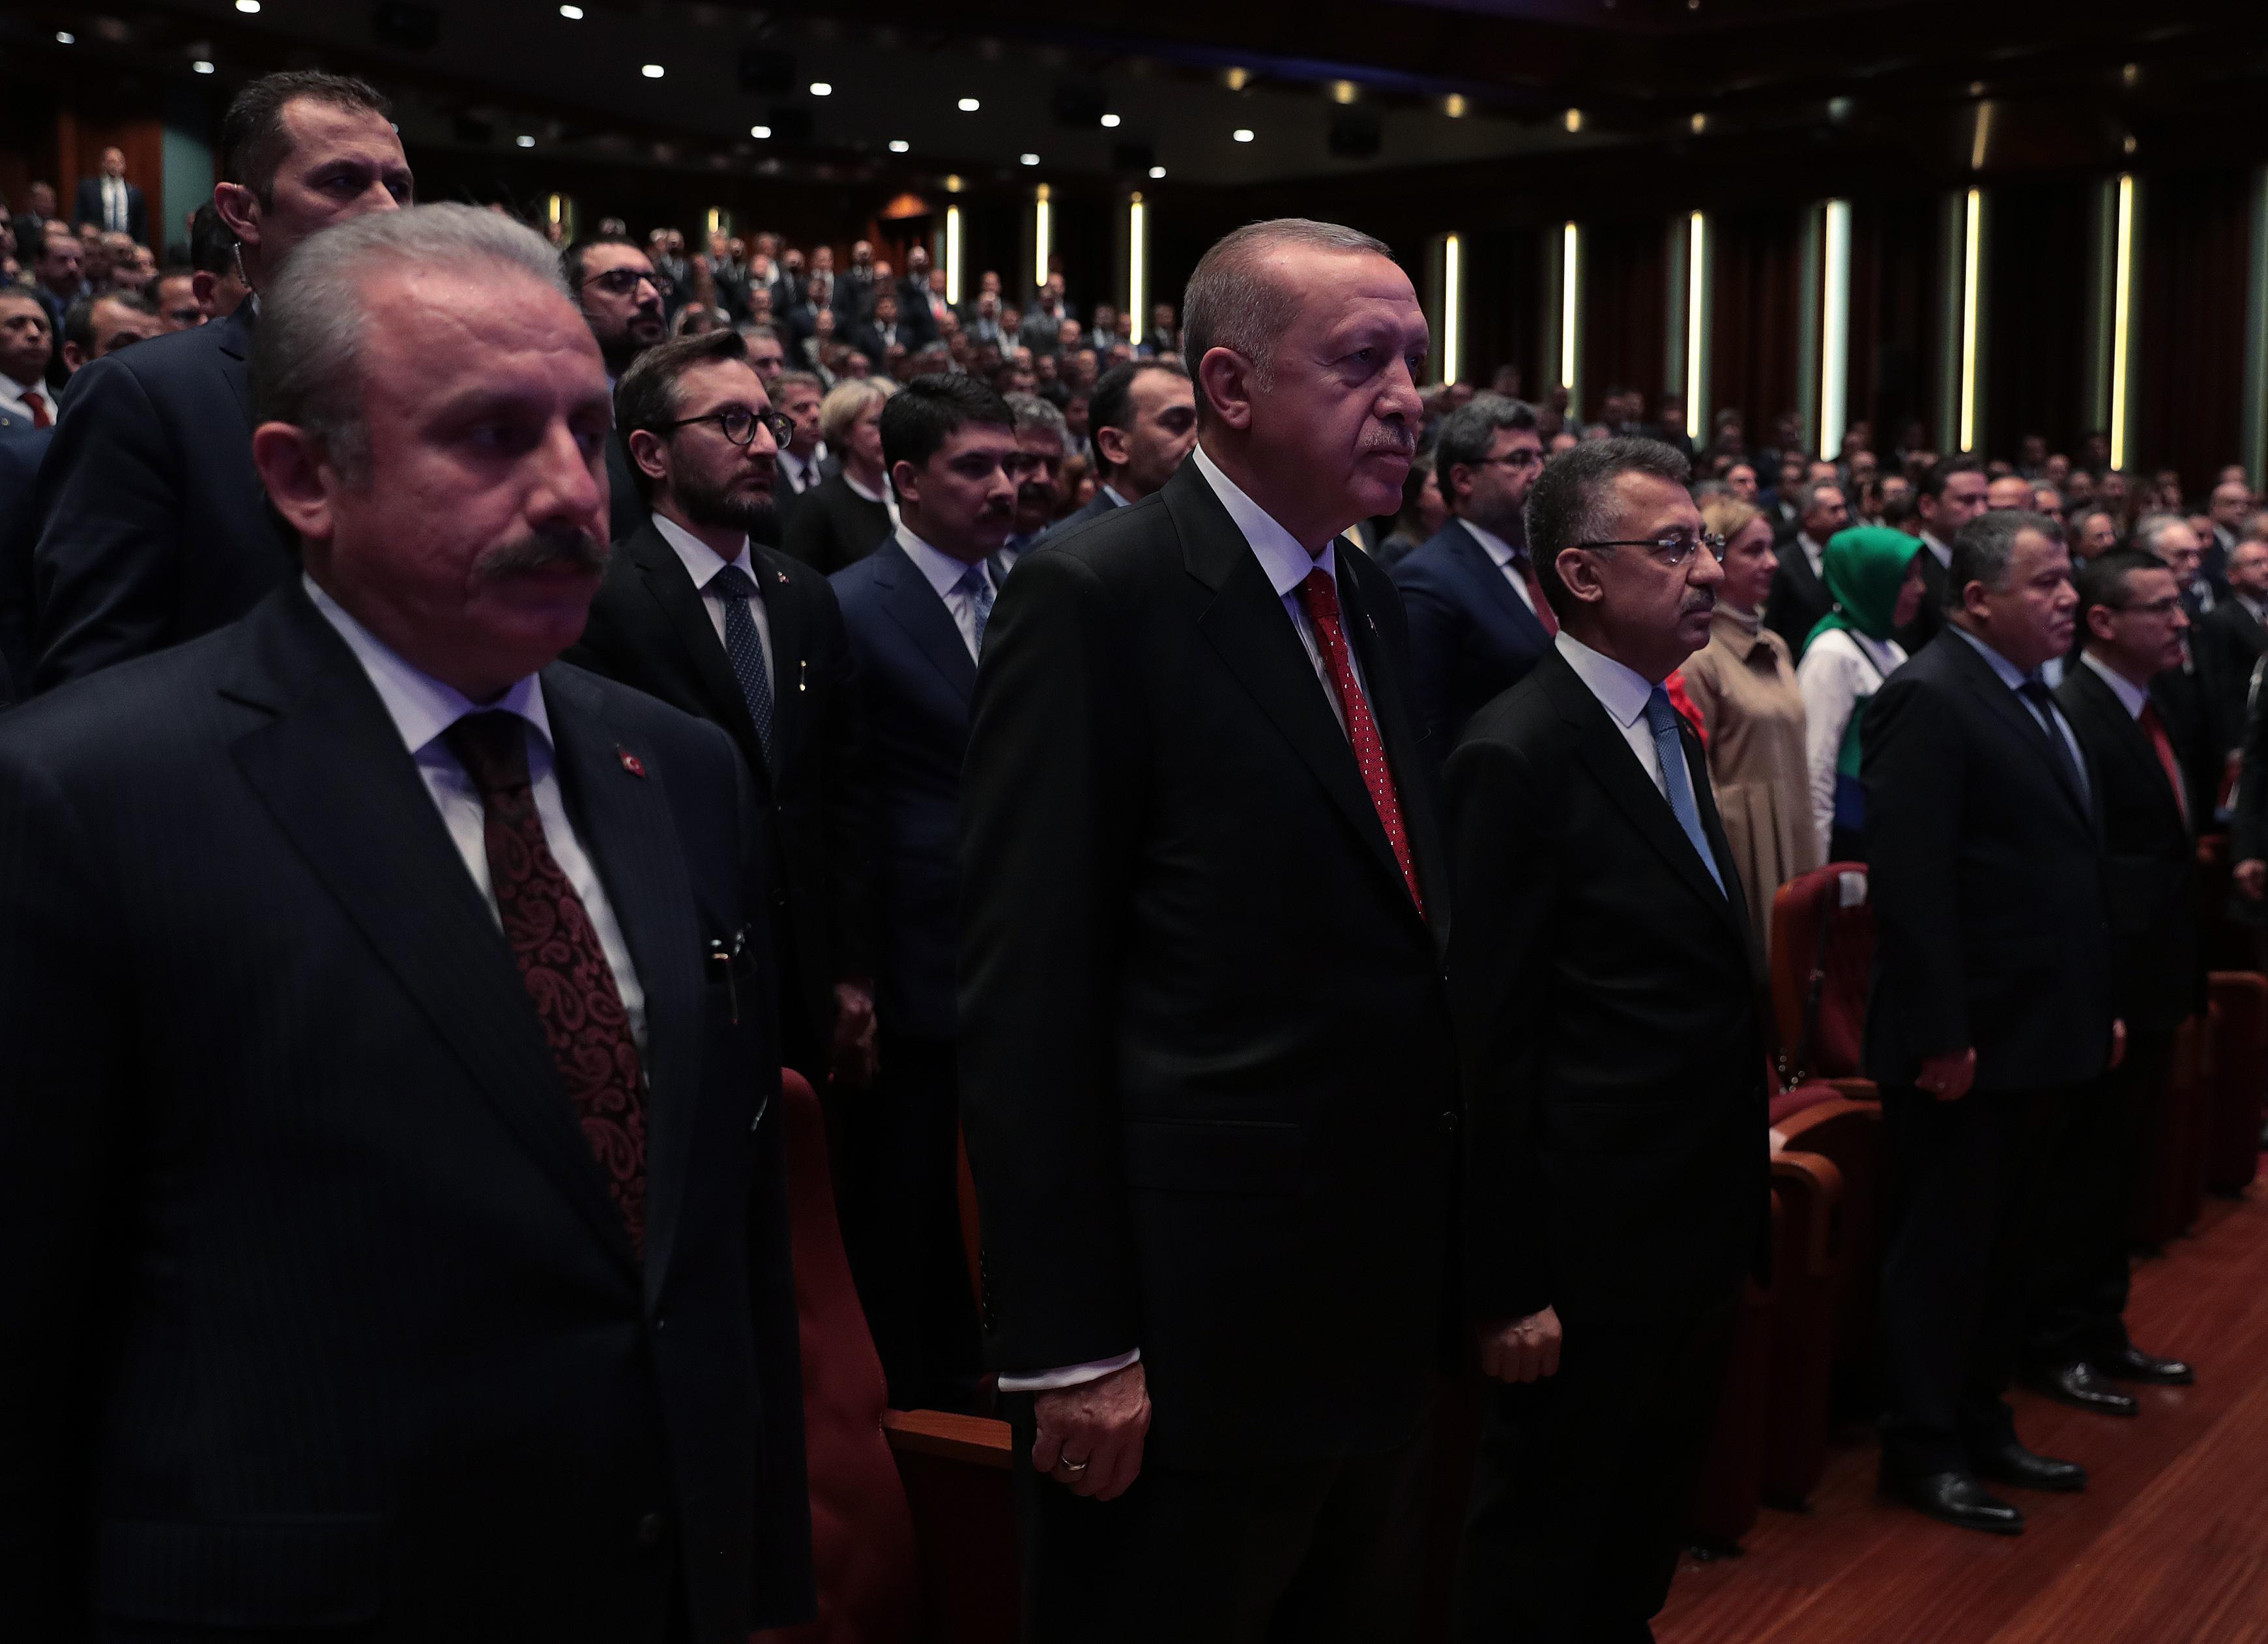 Cumhurbaşkanı Erdoğan Yargı Reformu Stratejisini açıkladı